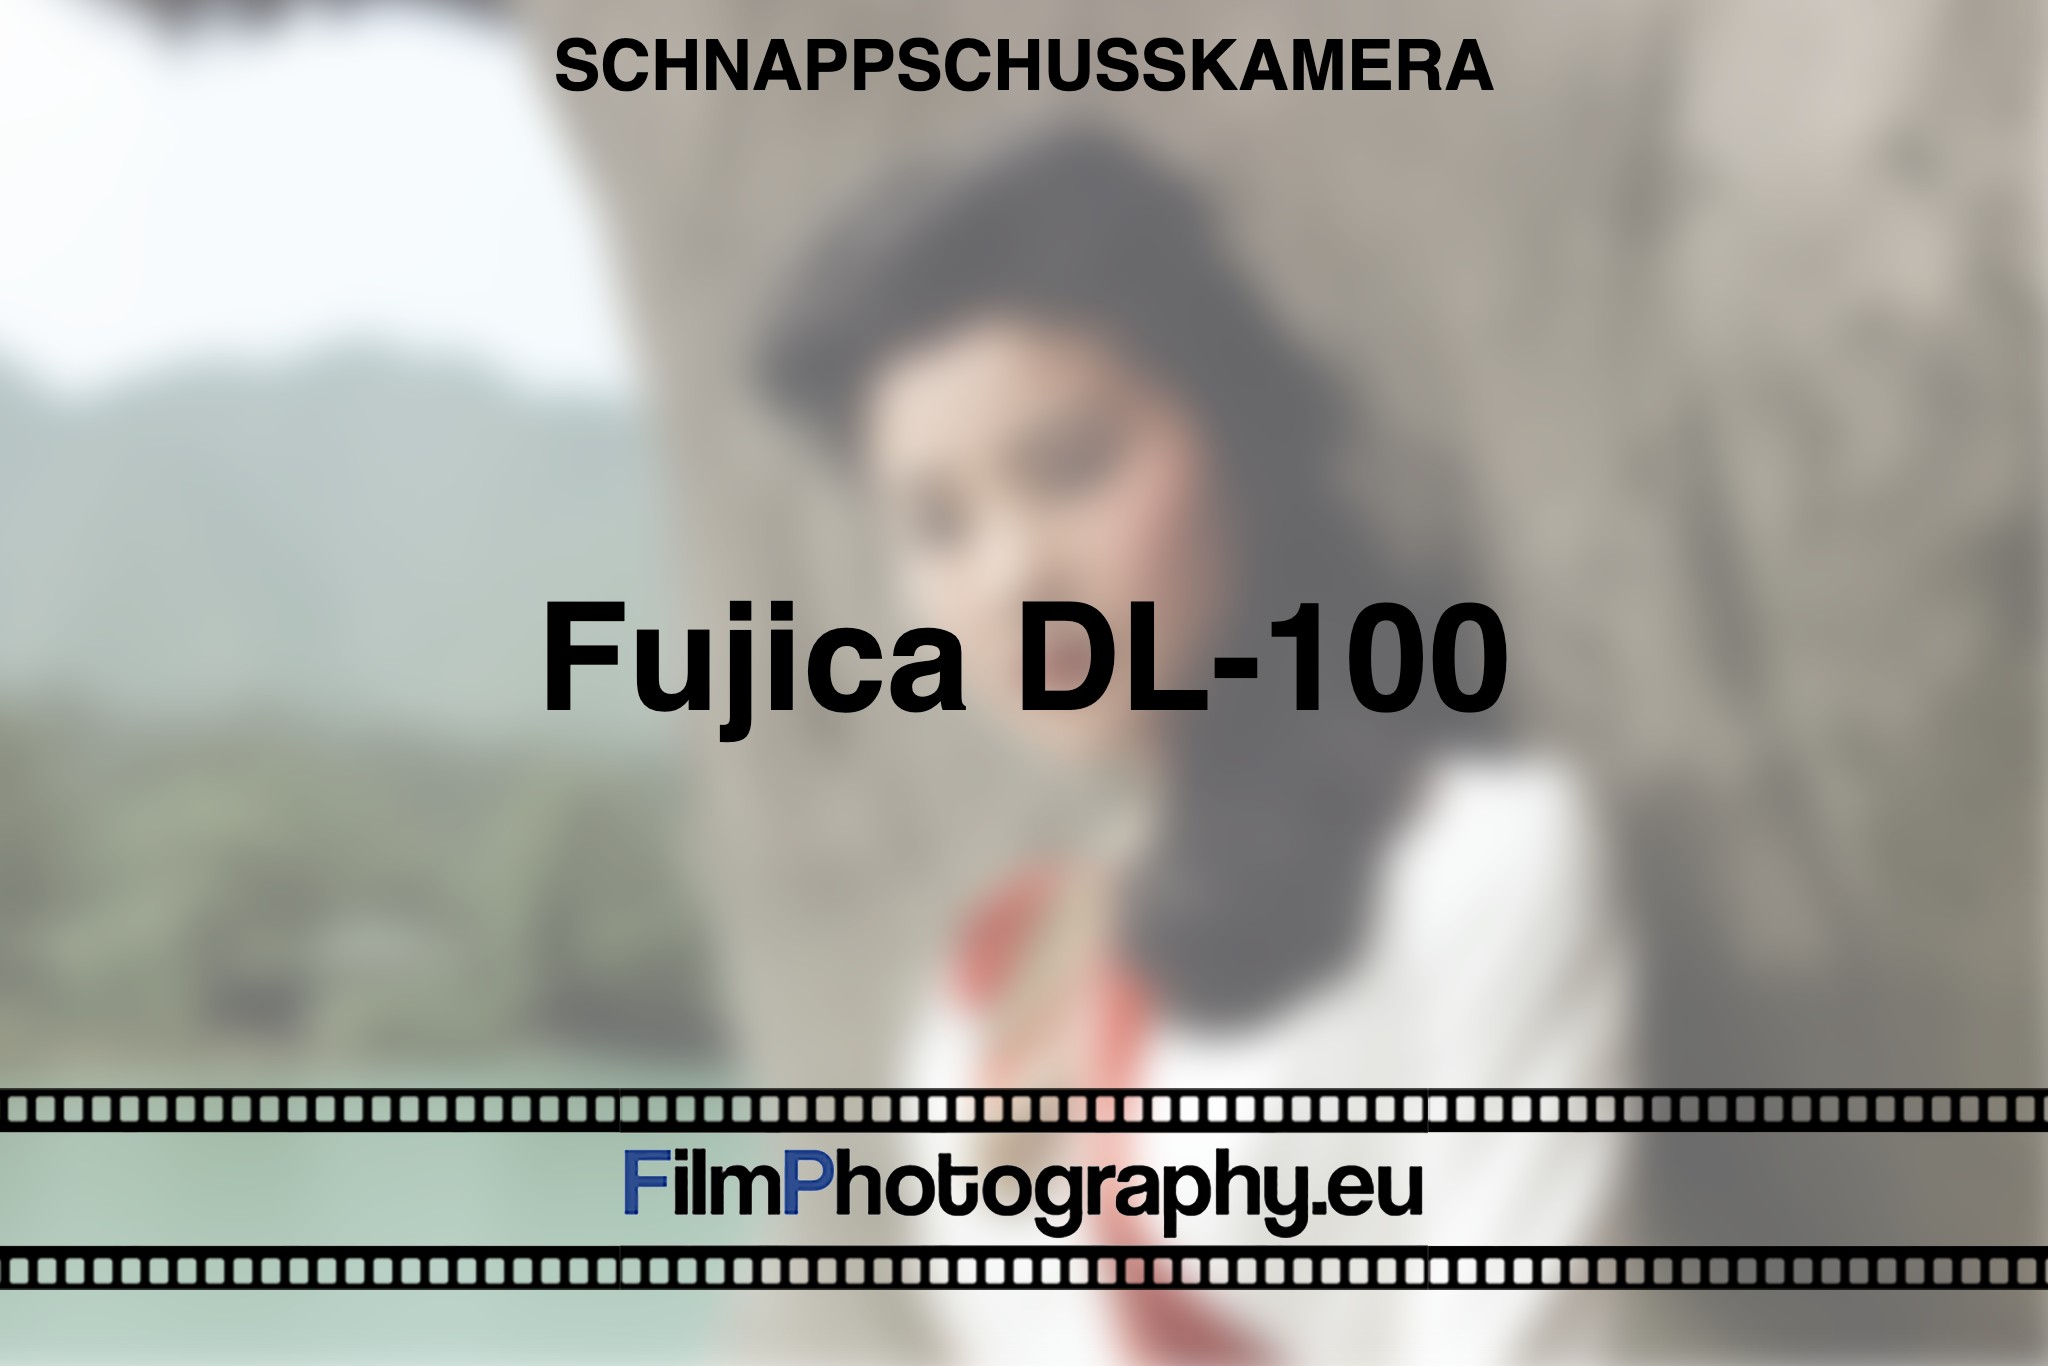 fujica-dl-100-schnappschusskamera-bnv